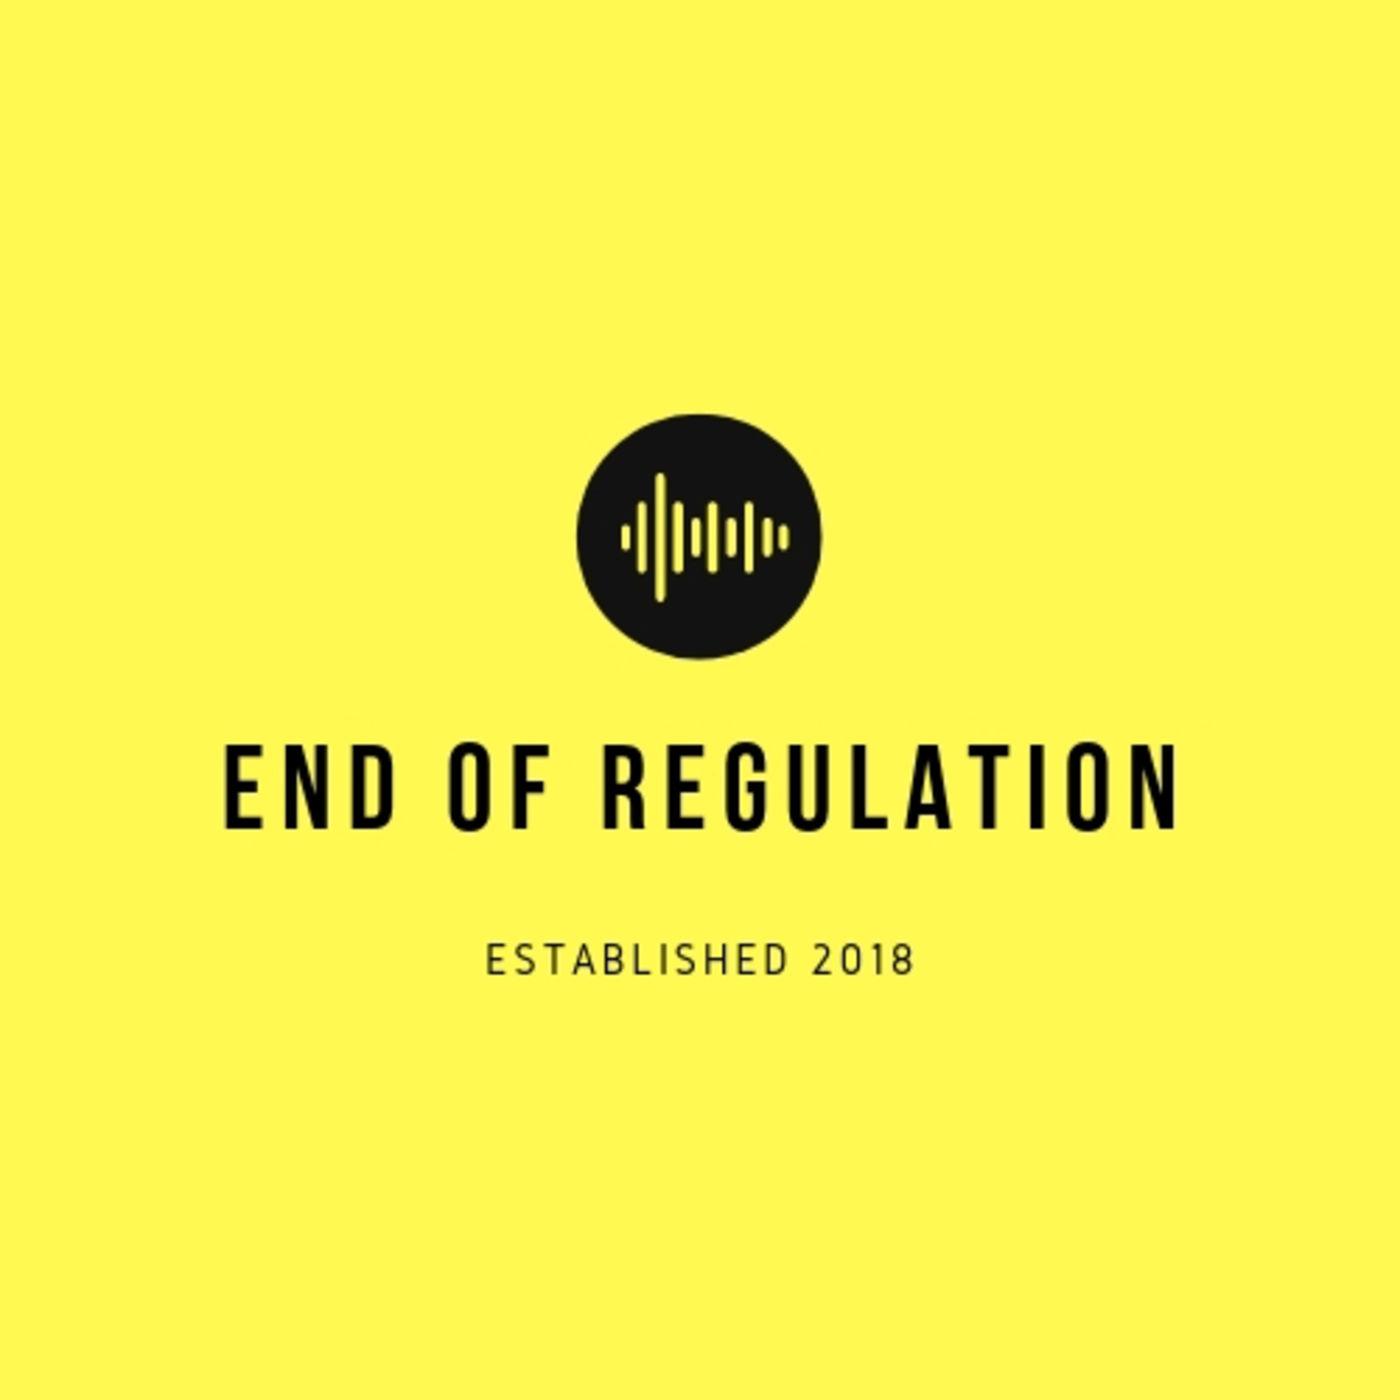 End of Regulation